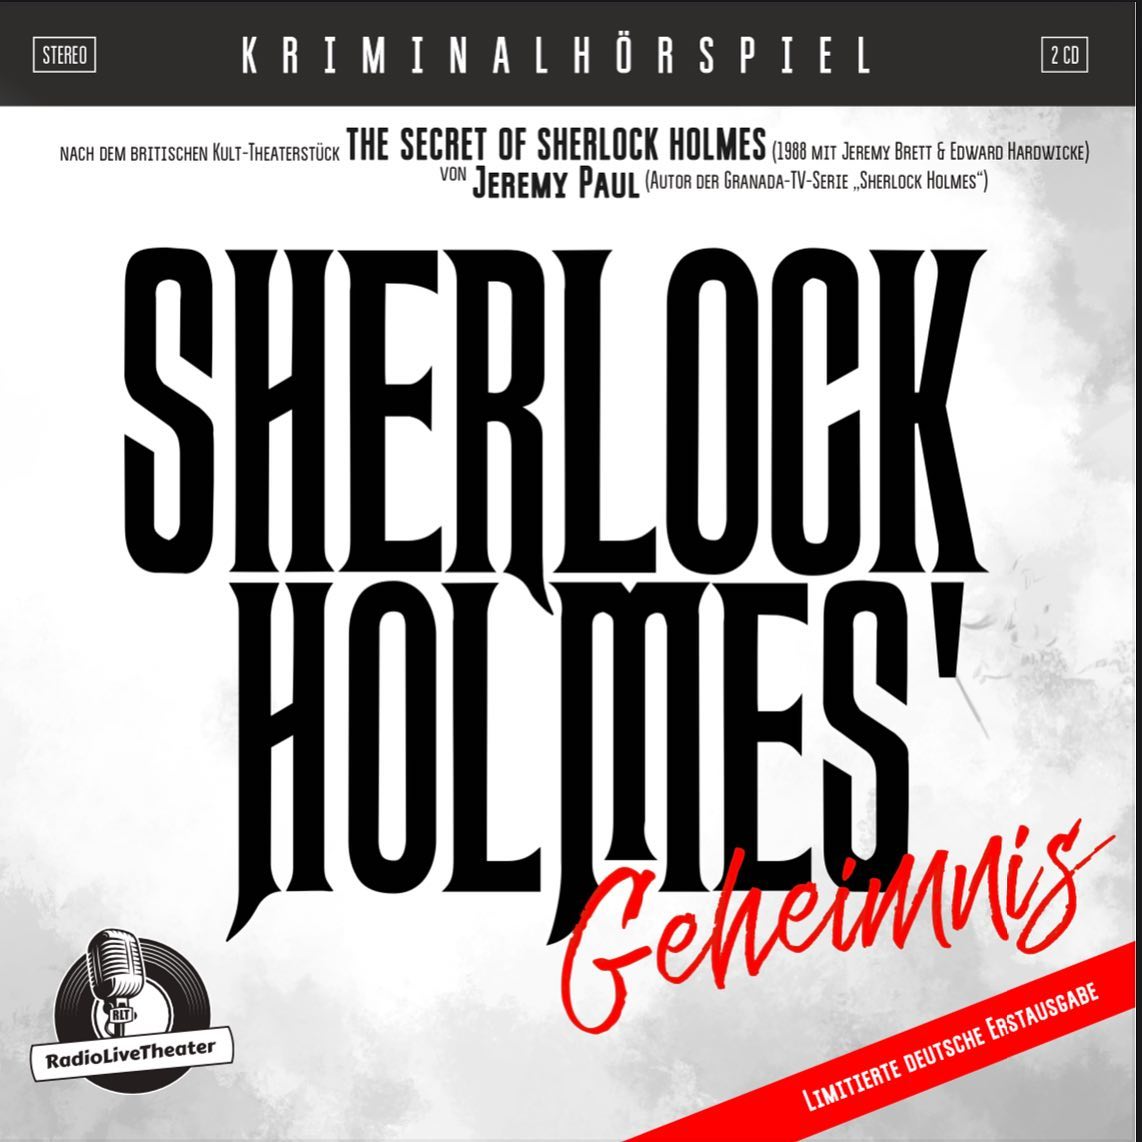 Nächste Woche Montag (21.11.) erscheint die deutschsprachige Erstausgabe des Hörspiels „Sherlock Holmes‘ Geheimnis“ auf Doppel-CD bei Pop.de! Die limitierte Sammler-Edition mit 2 CD’s, ca. 90 Min. & 8-seitigem Booklet kann jetzt schon zum Sonderpreis von 9,99€ bei Pop.de vorbestellt werden. Erstmals seit der Uraufführung des britischen Kult-Theaterstücks „The Secret Of Sherlock Holmes“ von Jeremy Paul (Inspector Barnaby) mit Jeremy Brett (My Fair Lady) als Sherlock Holmes und Edward Hardwicke (Tatsächlich… Liebe) als Dr. Watson bringt das RadioLiveTheater den Krimi exklusiv auf deutsch als Hörspiel-CD raus. Eine fesselnde Charakterstudie der Freundschaft zwischen zwei der berühmtesten Figuren der Literatur mit einer dramatischen Enthüllung. Mit Carolin Freund, Horst Peter Walz, Klaus Krückemeyer & Sebastian W. Wagner. www.RadioLiveTheater.de #radiolivetheater  #sherlockholmesgeheimnis #thesecretofsherlockholmes #jeremypaul #jeremybrett #jeremybrettismyfavorite #jeremybrettforever #jeremybrettisthebestsherlockholmes #jeremybrettsherlockholmes #edwardhardwicke #watson #drjohnwatson #drwatson #sherlock #sherlockholmes #sherlockian #sherlockfandom #sherlocked #sherlockians #sherlock_holmes #sherlocklives #sherlockfan #sherlockandwatson #granadatv #granada #kriminalhörspiel #deutschsprachigeerstausgabe #krimihörspiel #krimihoerspiel #keinmucks @radiolivetheater @sebastian_w_wagner @klauskrueckemeyer @carolin_freund @happyminchen @nyxomay @maja_rth